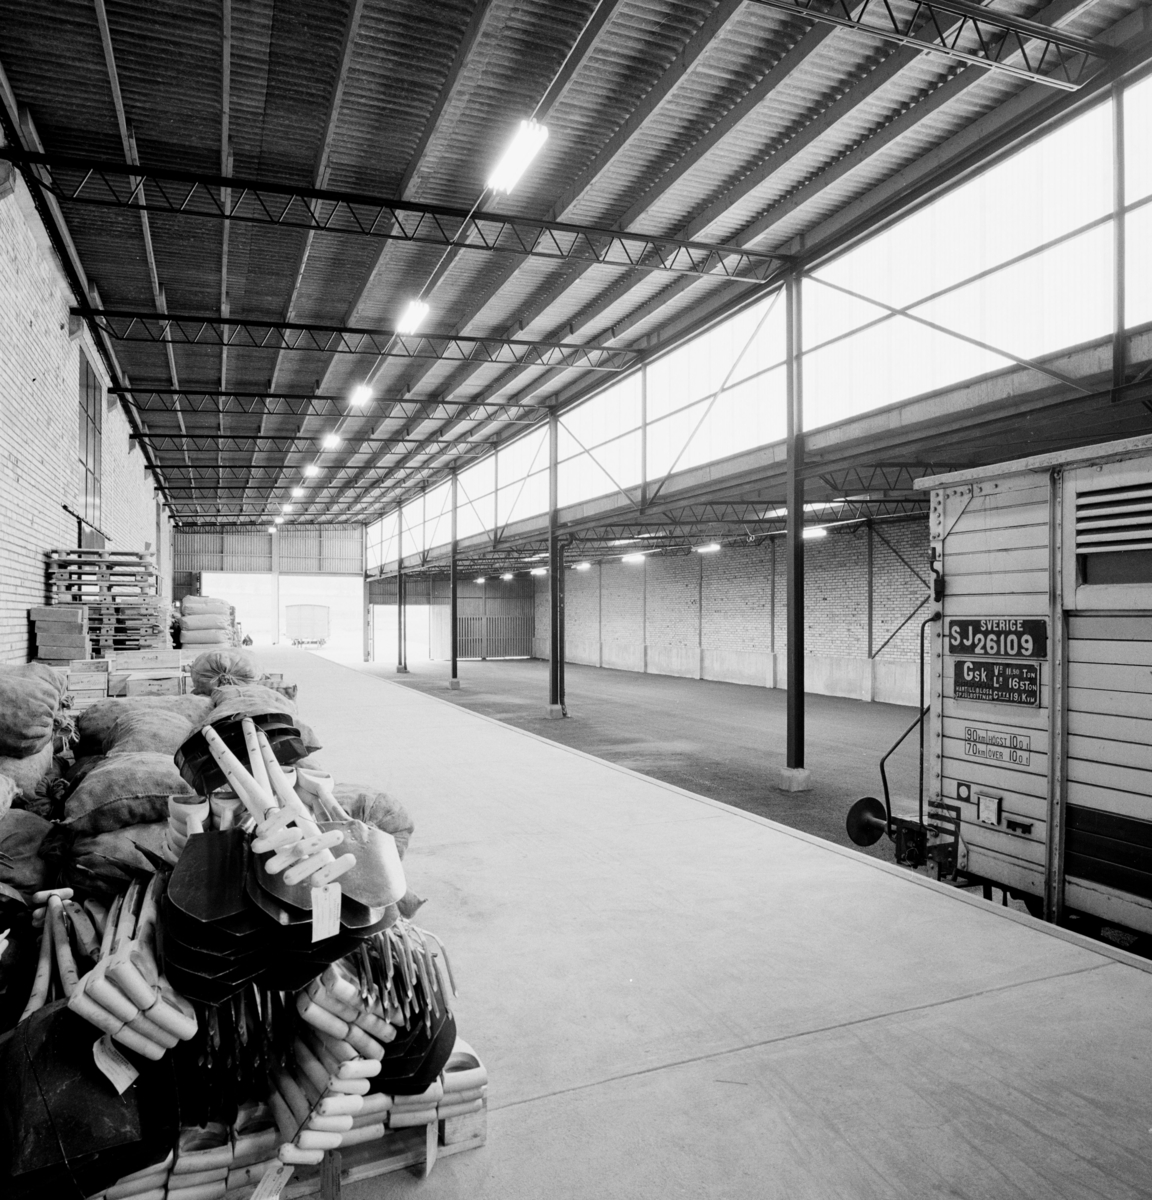 Lagercentral i Jönköping
Interiör av lager. Matsäckar i förgrunden.